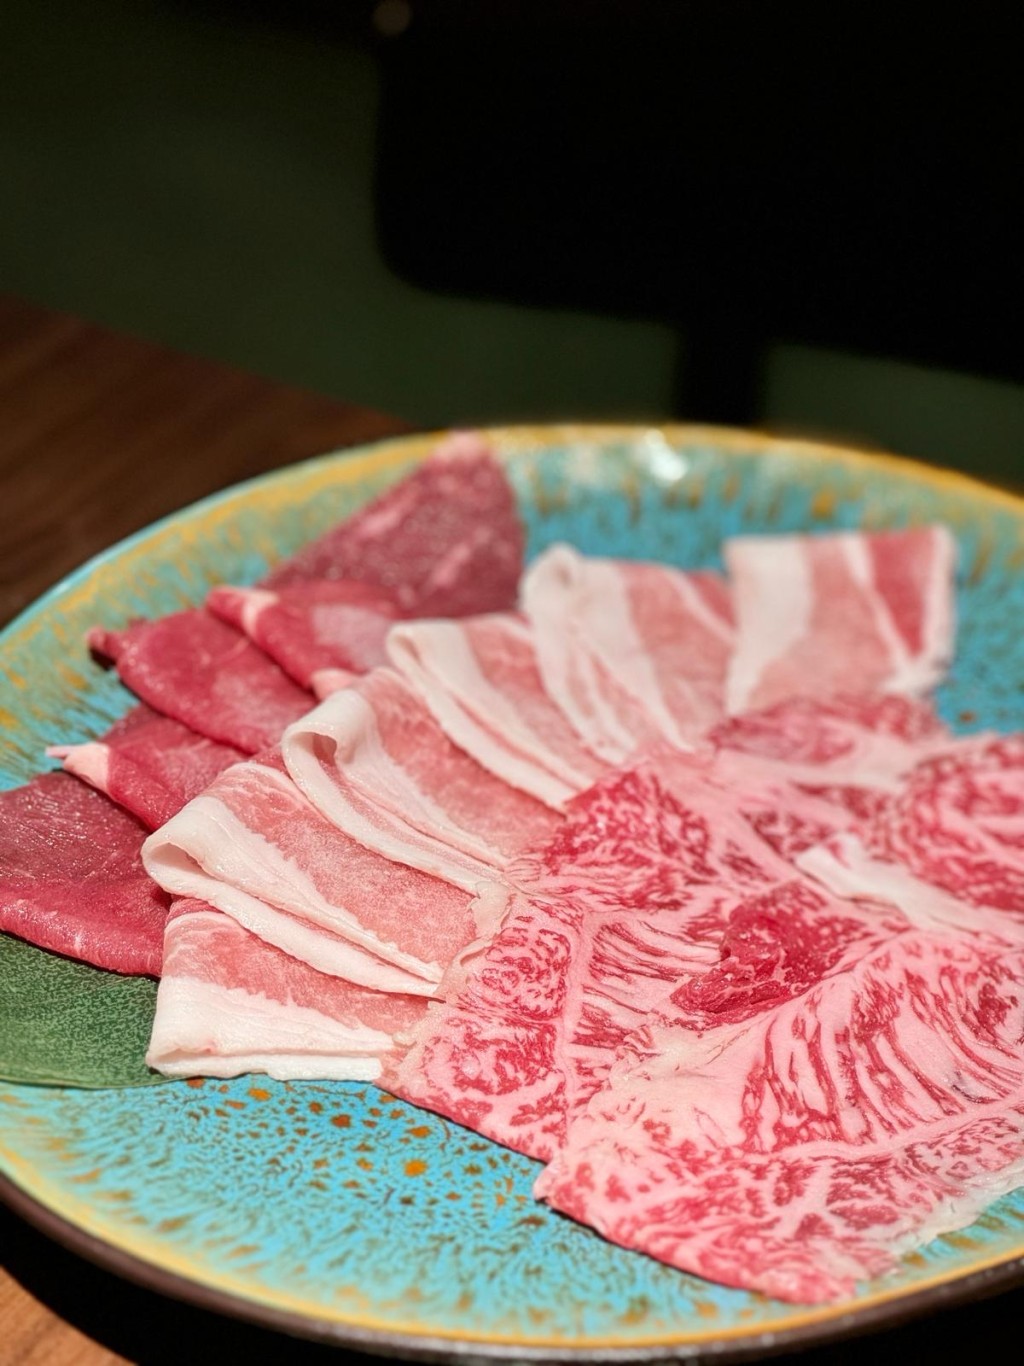 牛肉及豚肉拼盤，包含安格斯肉眼、西班牙豚肉、美國牛側腹，圖為日本A4和牛、日本黑豚、美國牛側腹，需加$99升級。